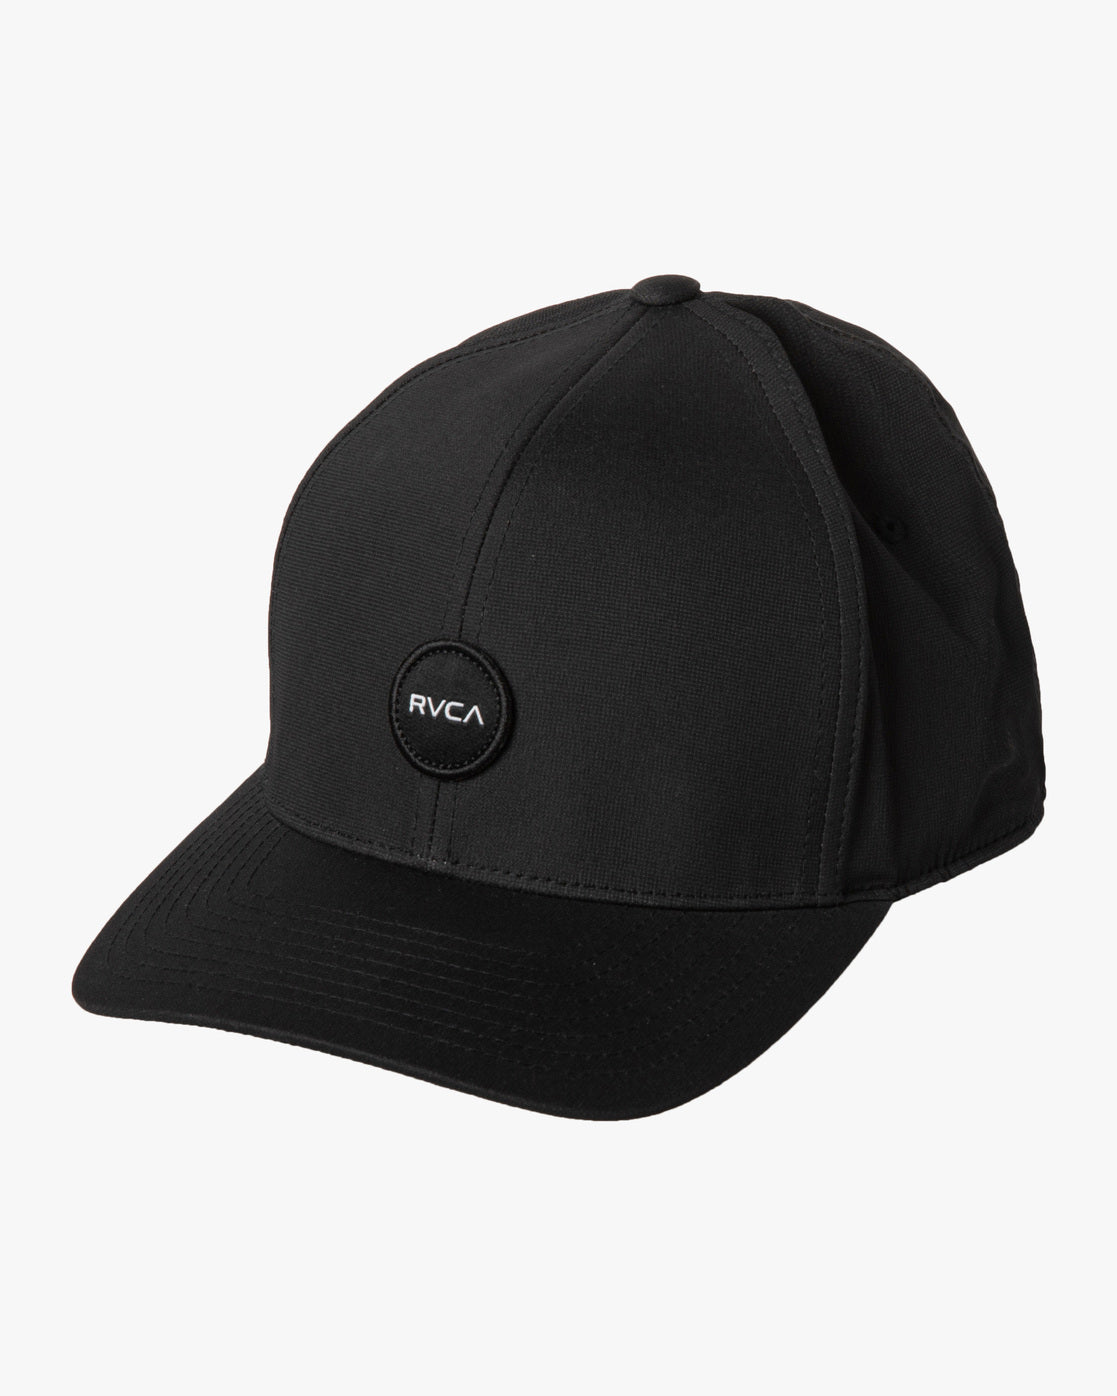 RVCA Seasons Flexfit Hat Black Men's Hats RVCA 